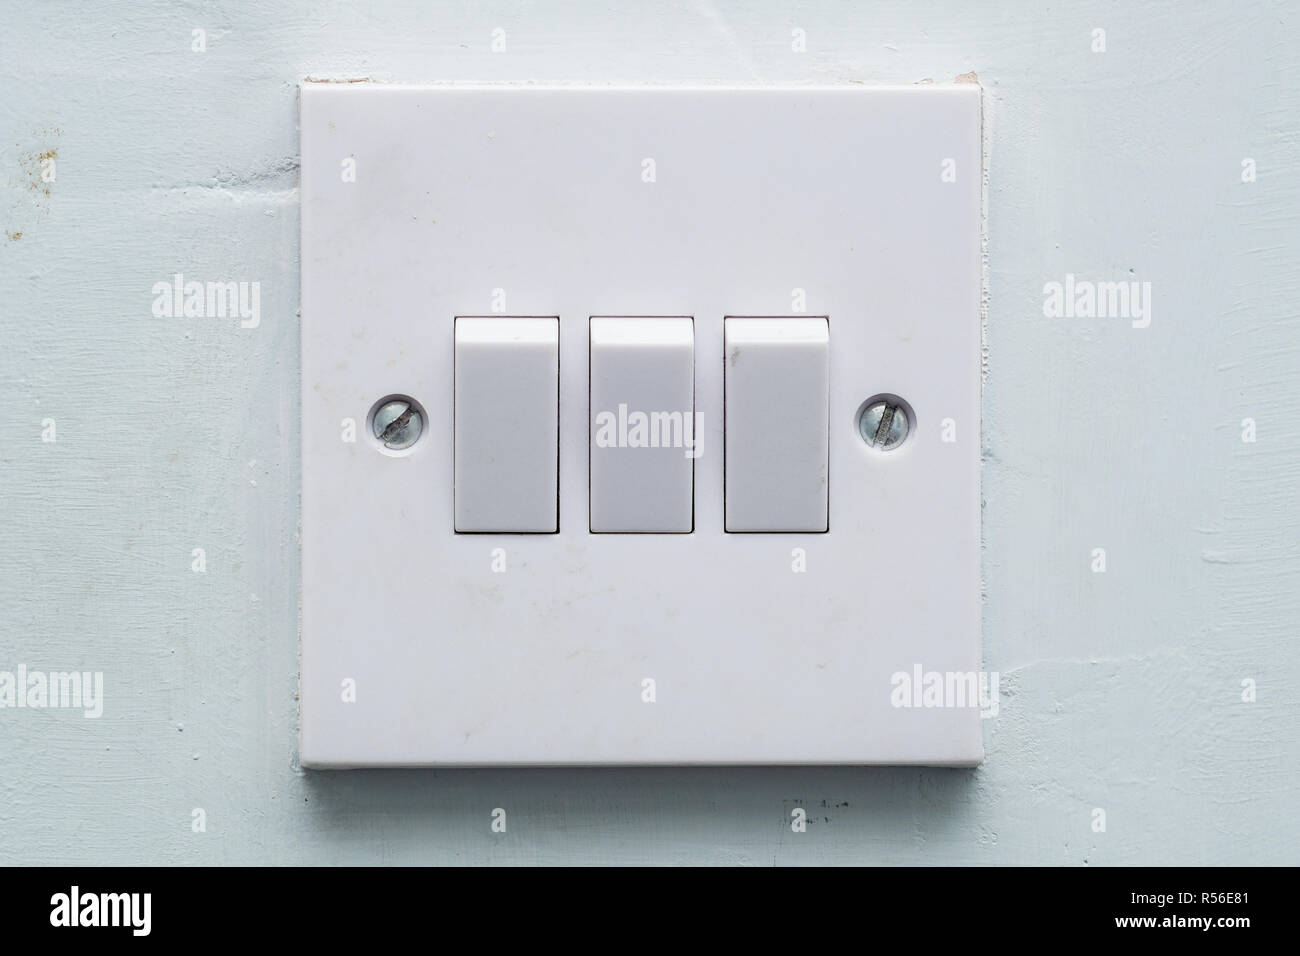 Interruptor de luz selecciones fotografías e imágenes de alta resolución -  Alamy